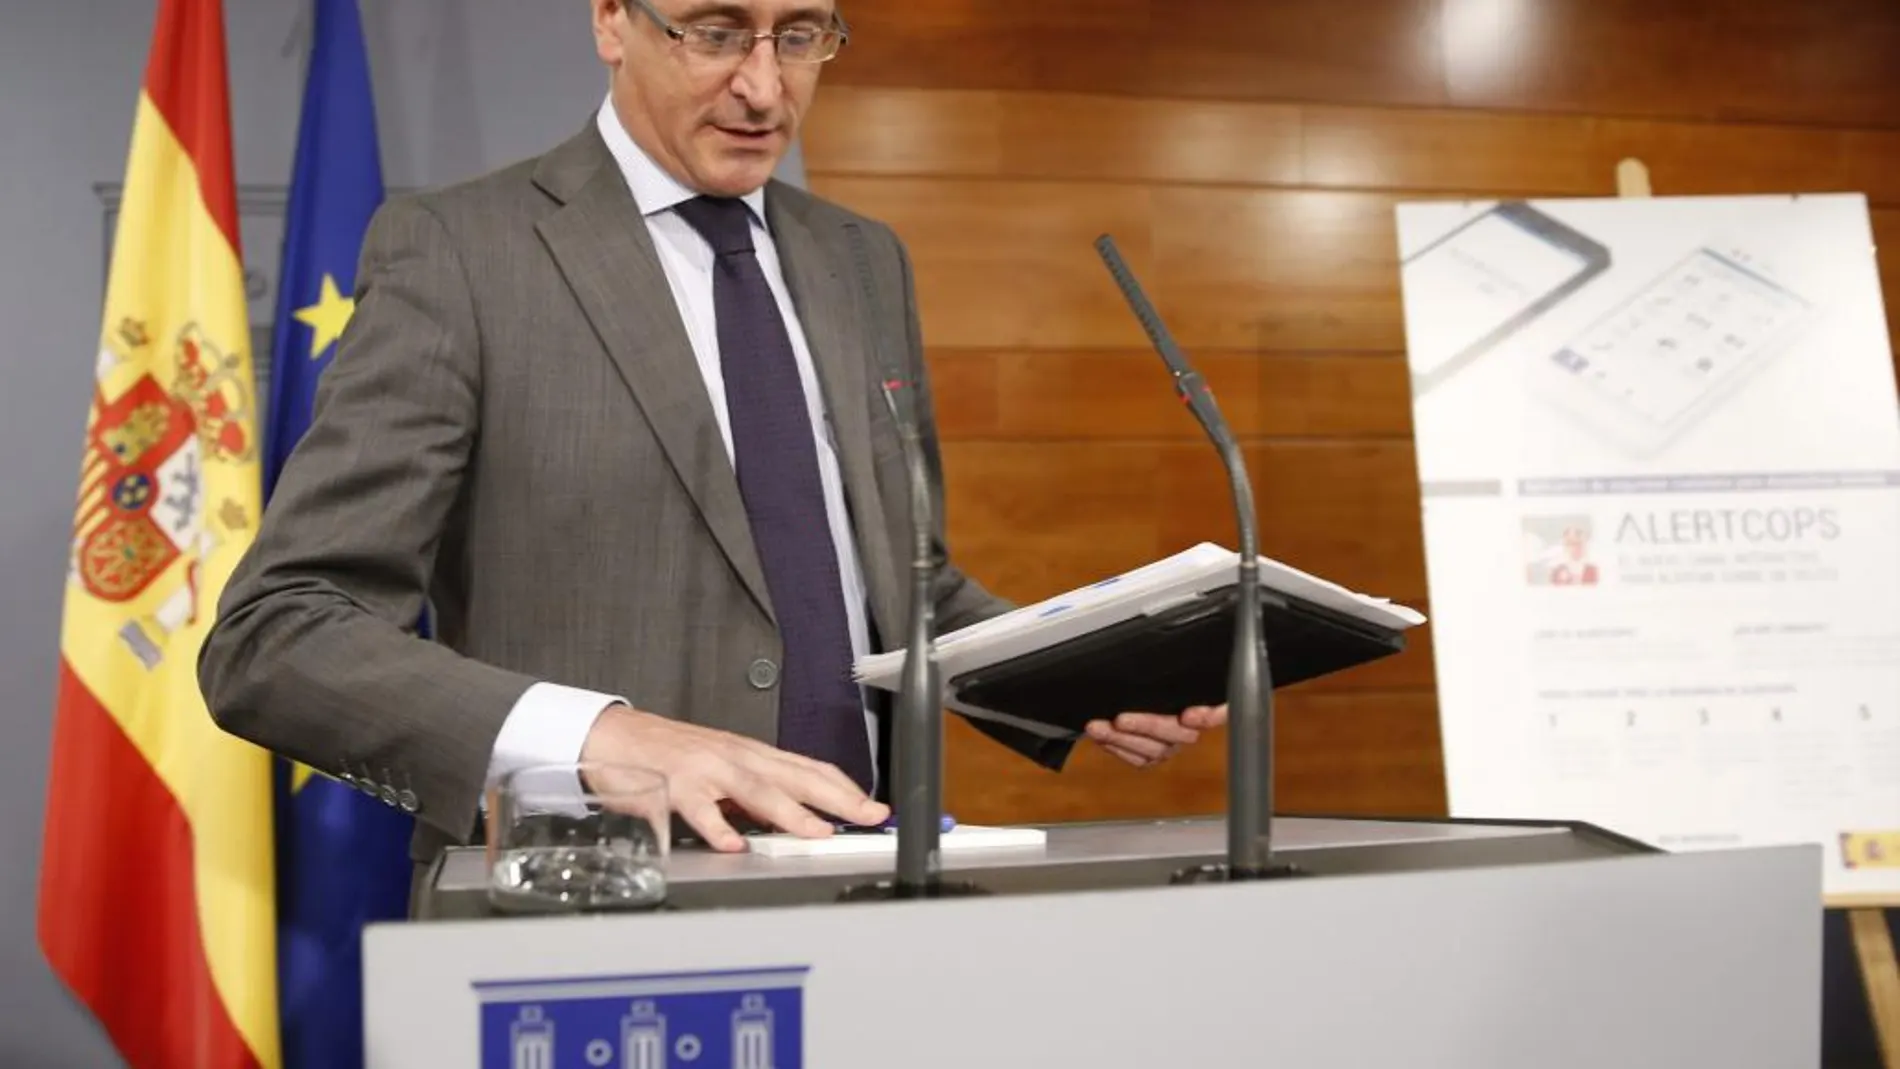 El ministro de Sanidad, Asuntos Sociales e Igualdad, Alfonso Alonso